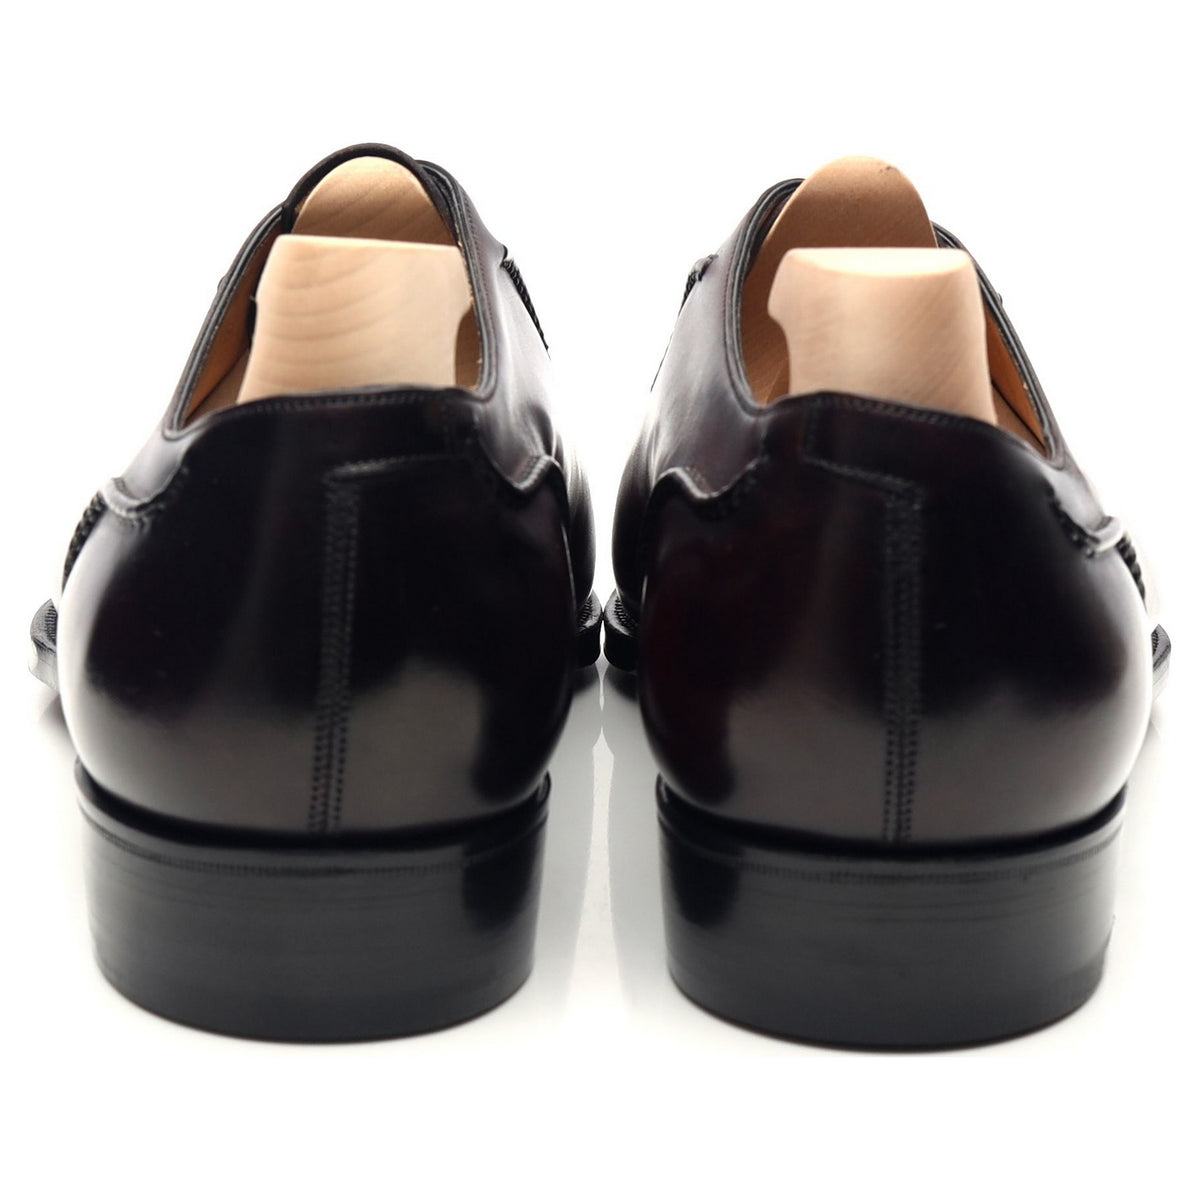 &#39;Gable&#39; Burgundy Margaux Patina Leather Oxford UK 7.5 F